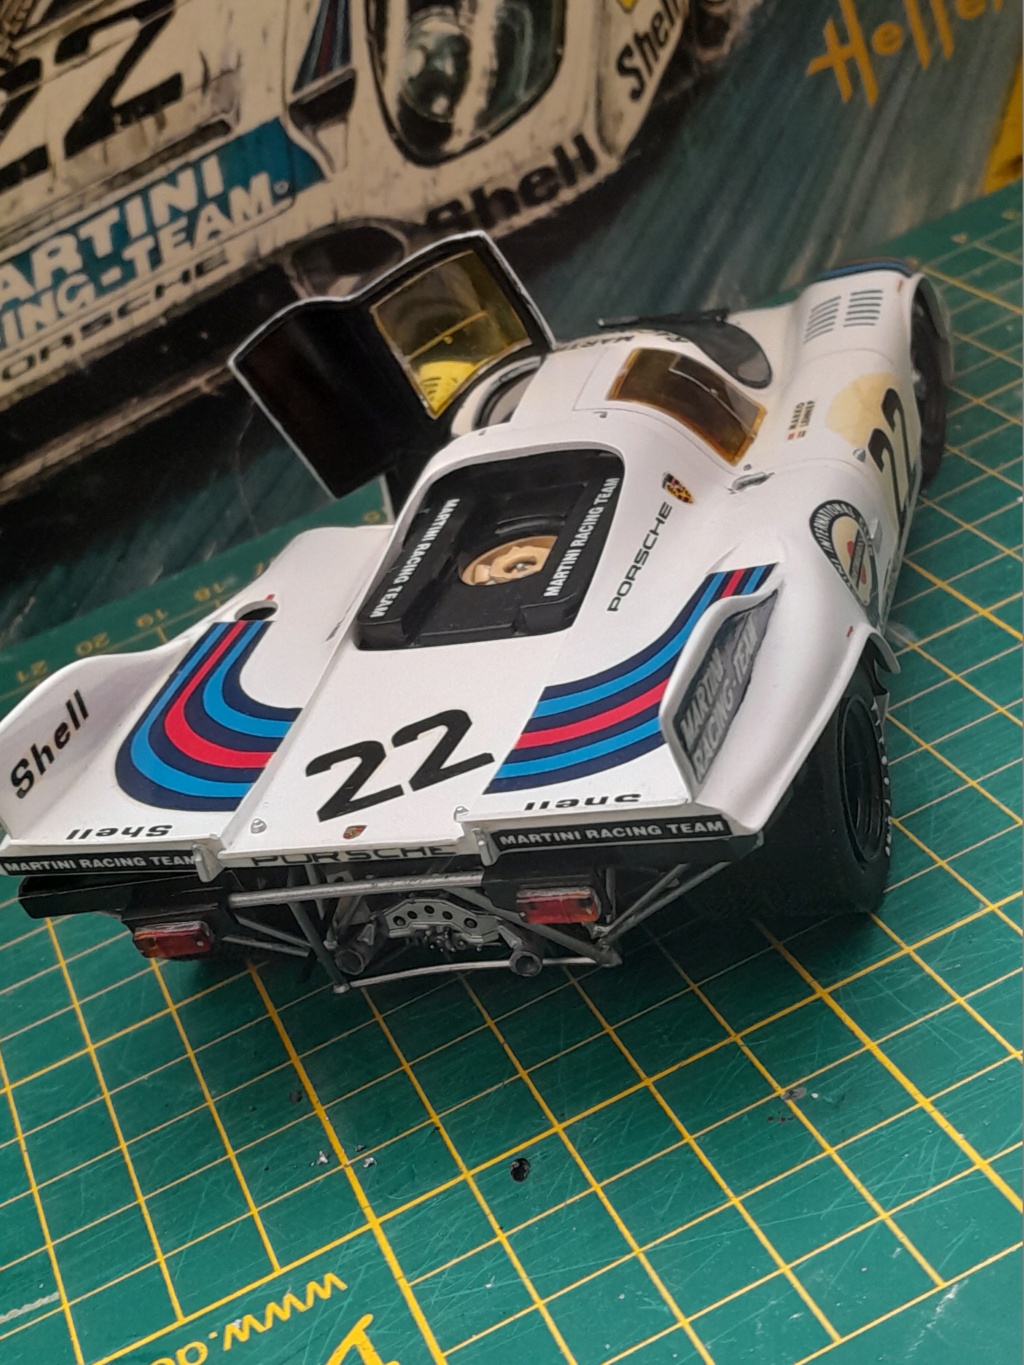 Porsche 917 "Martini" vainqueur en 71 Heller 1:24 - Page 8 20221255